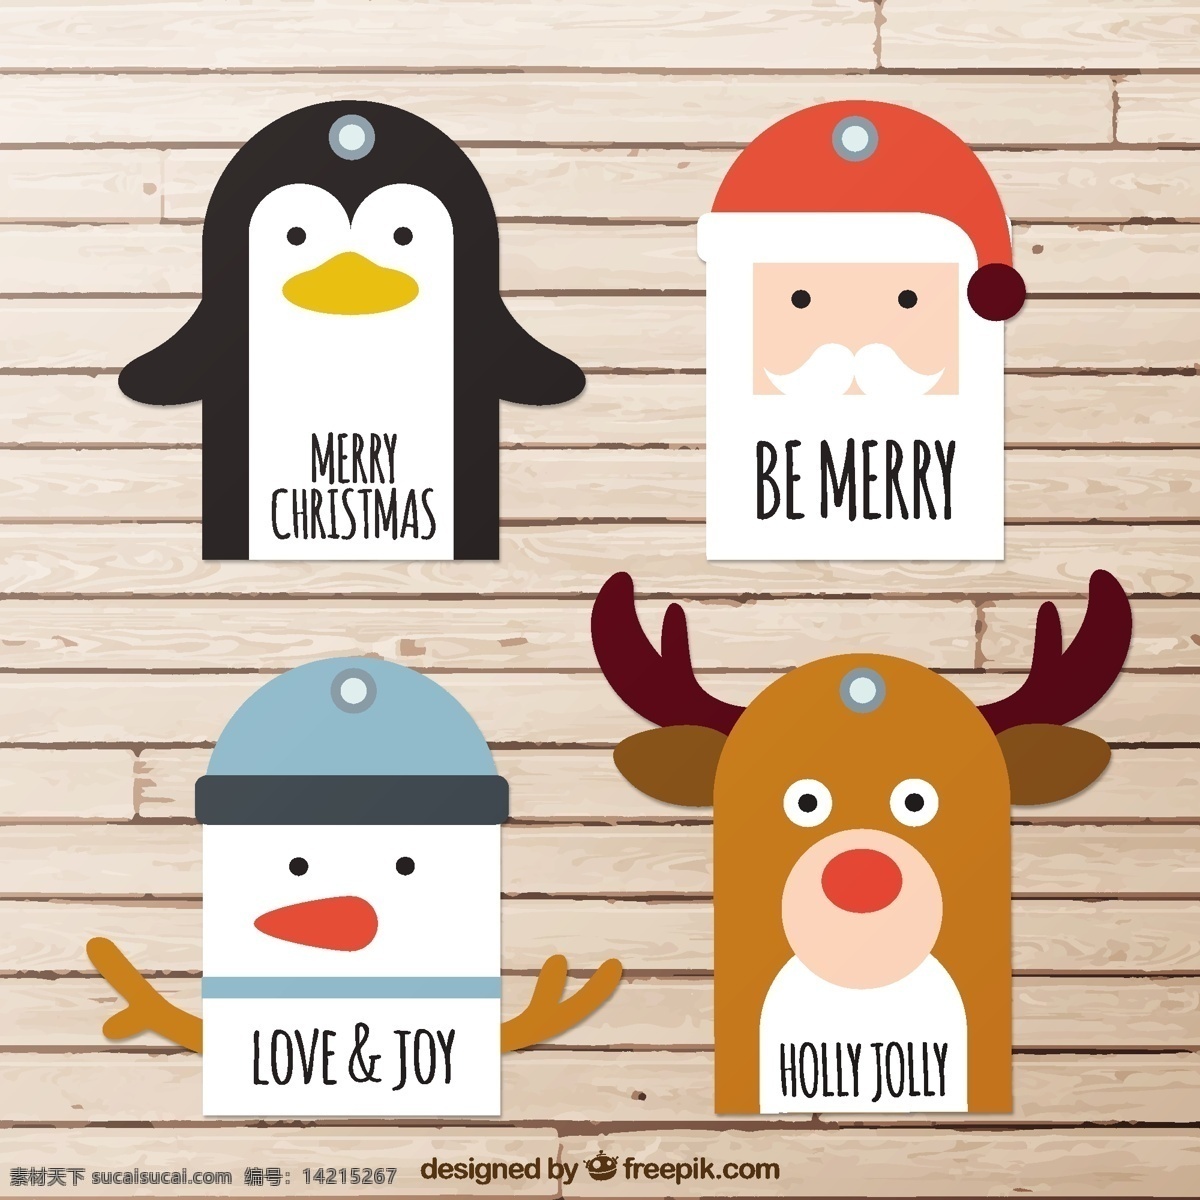 华丽 圣诞 人物 圣诞节 标签 动物 圣诞老人 克劳斯 圣诞卡 雪人 驯鹿 企鹅 问候 花式 圣诞标签 季节 白色